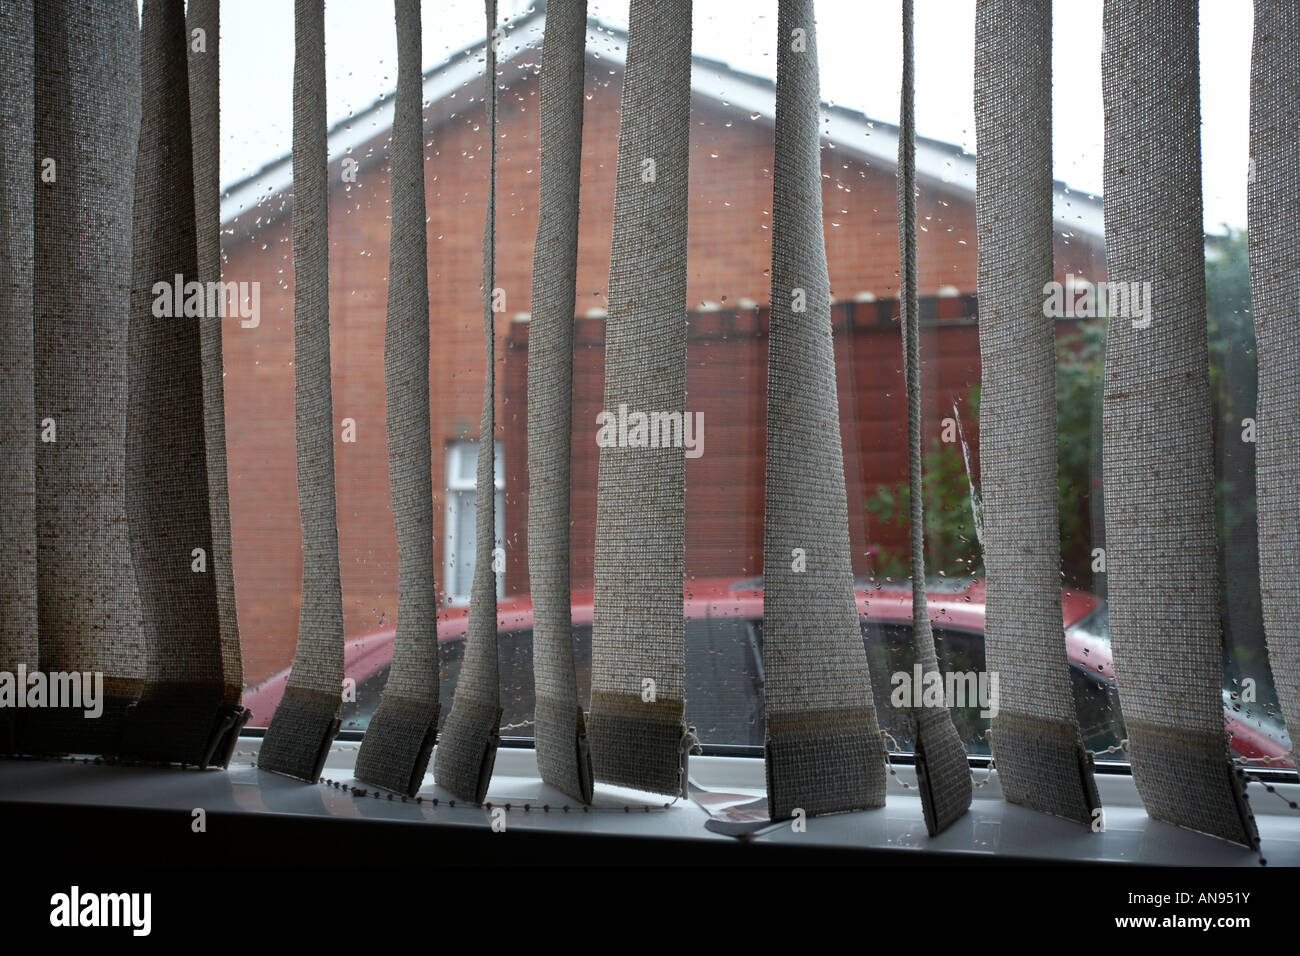 Vertikal-Jalousien eines Hauses Durchsicht verregneten Fenster und Auto  Stockfotografie - Alamy